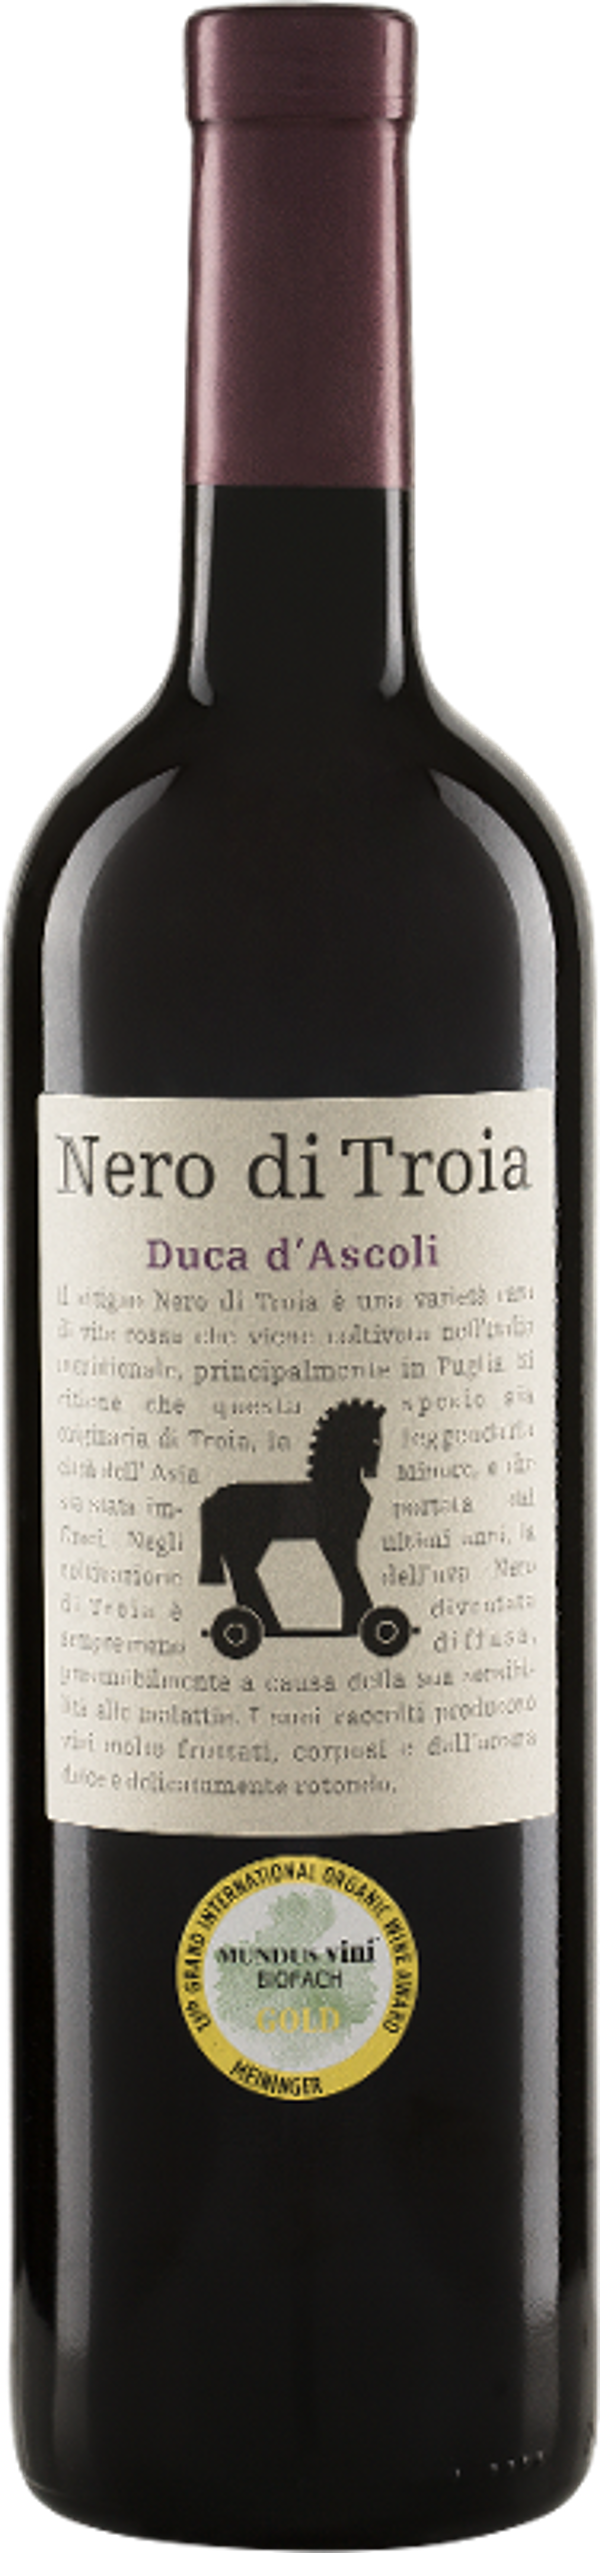 Produktfoto zu Nero di Troia Duca d'Ascoli Pu